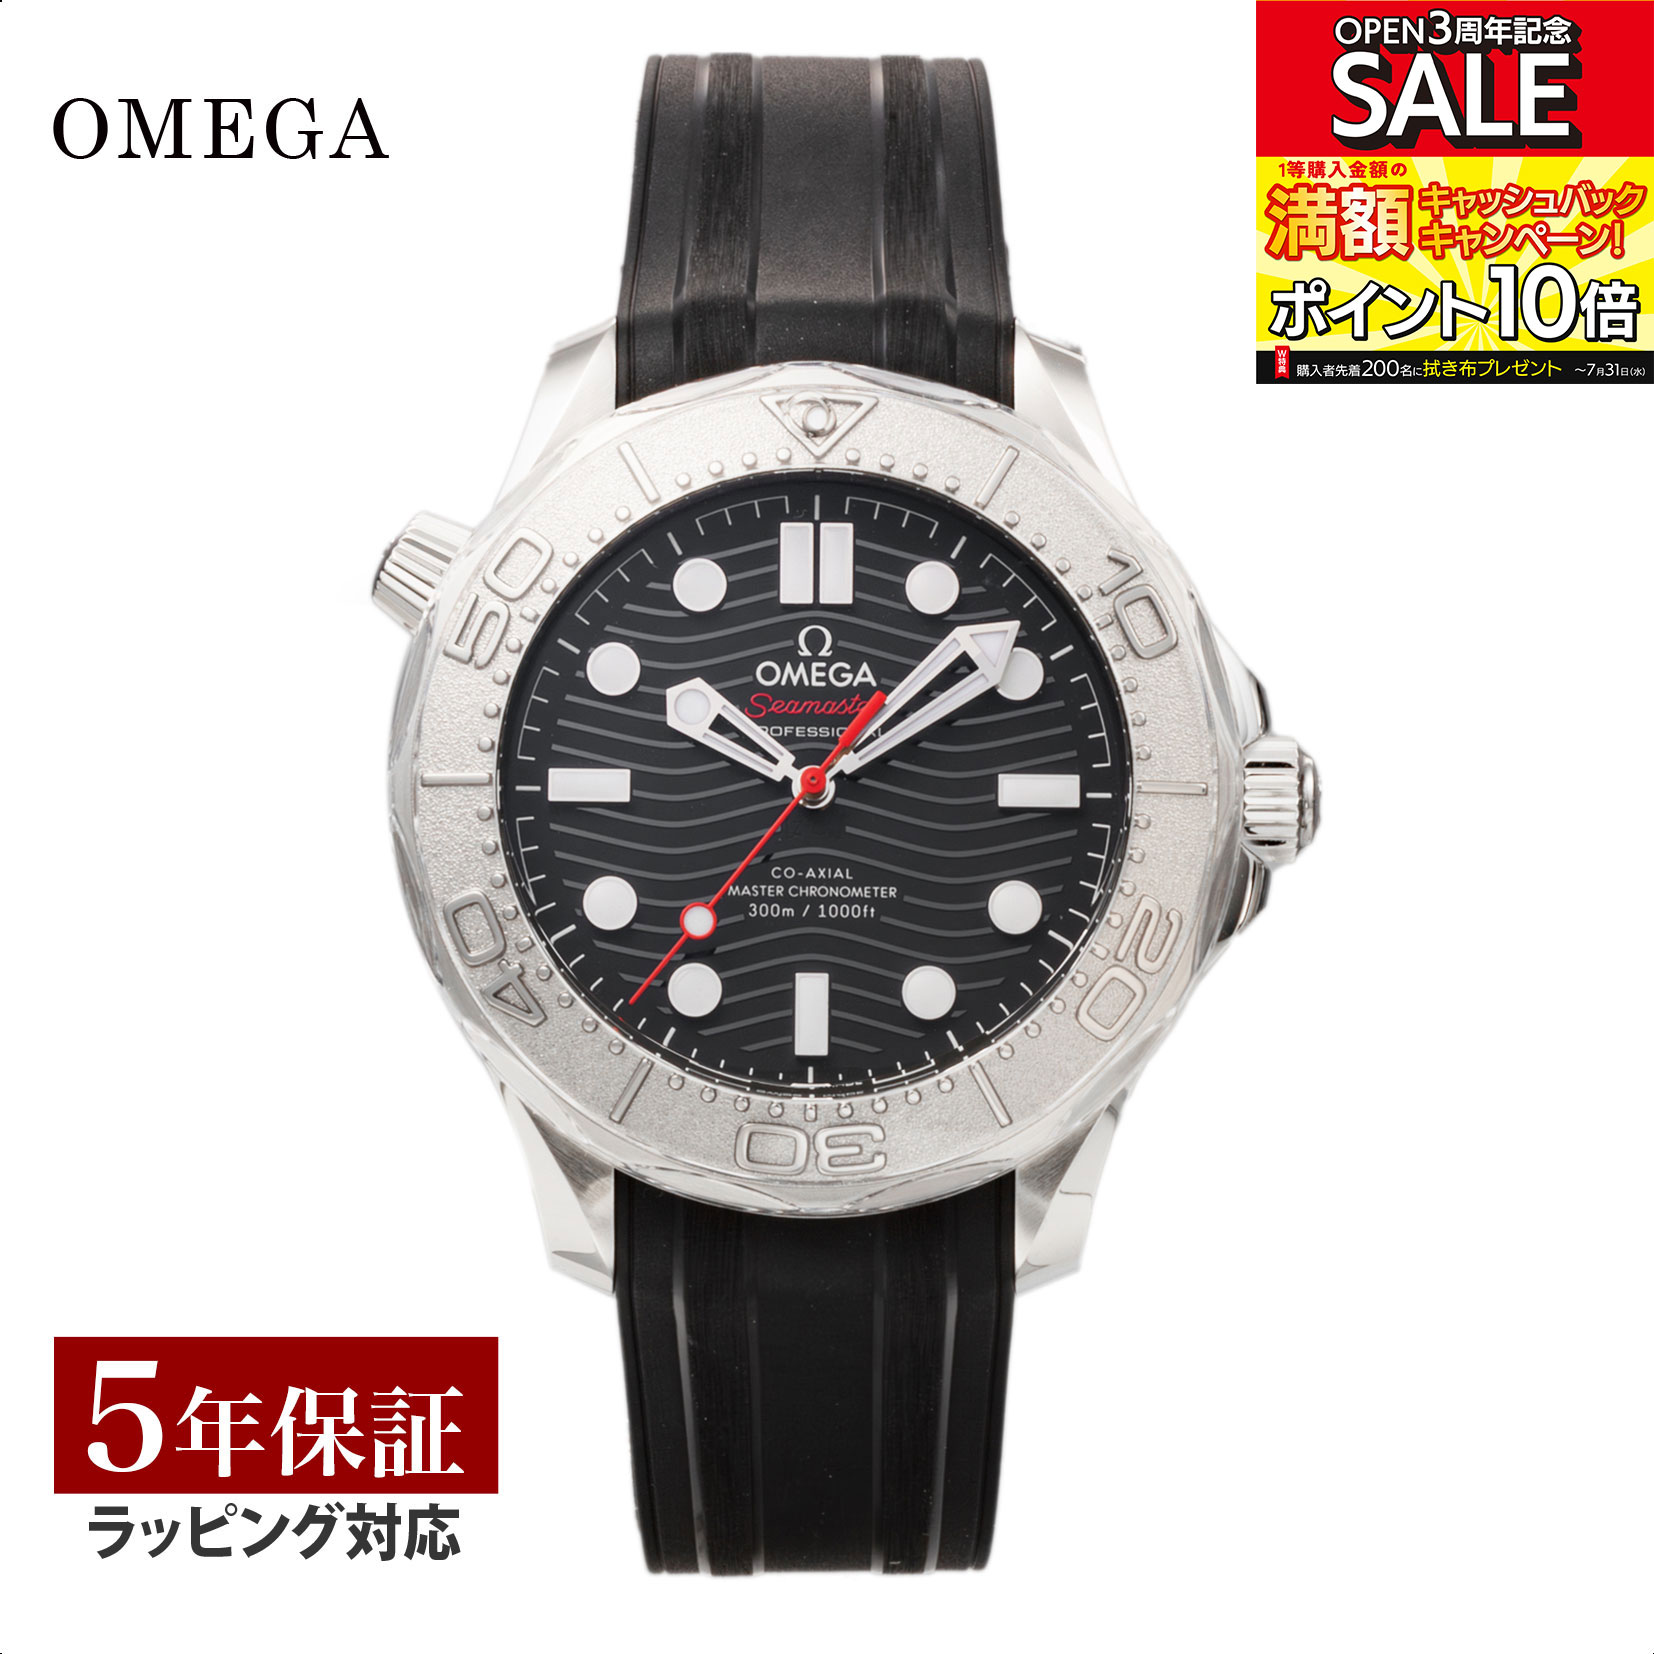 シーマスター オメガ OMEGA メンズ 時計 シーマスター ダイバー 300M Seamaster Diver 300M コーアクシャル自動巻 ブラック 210.32.42.20.01.002 腕時計 高級腕時計 ブランド